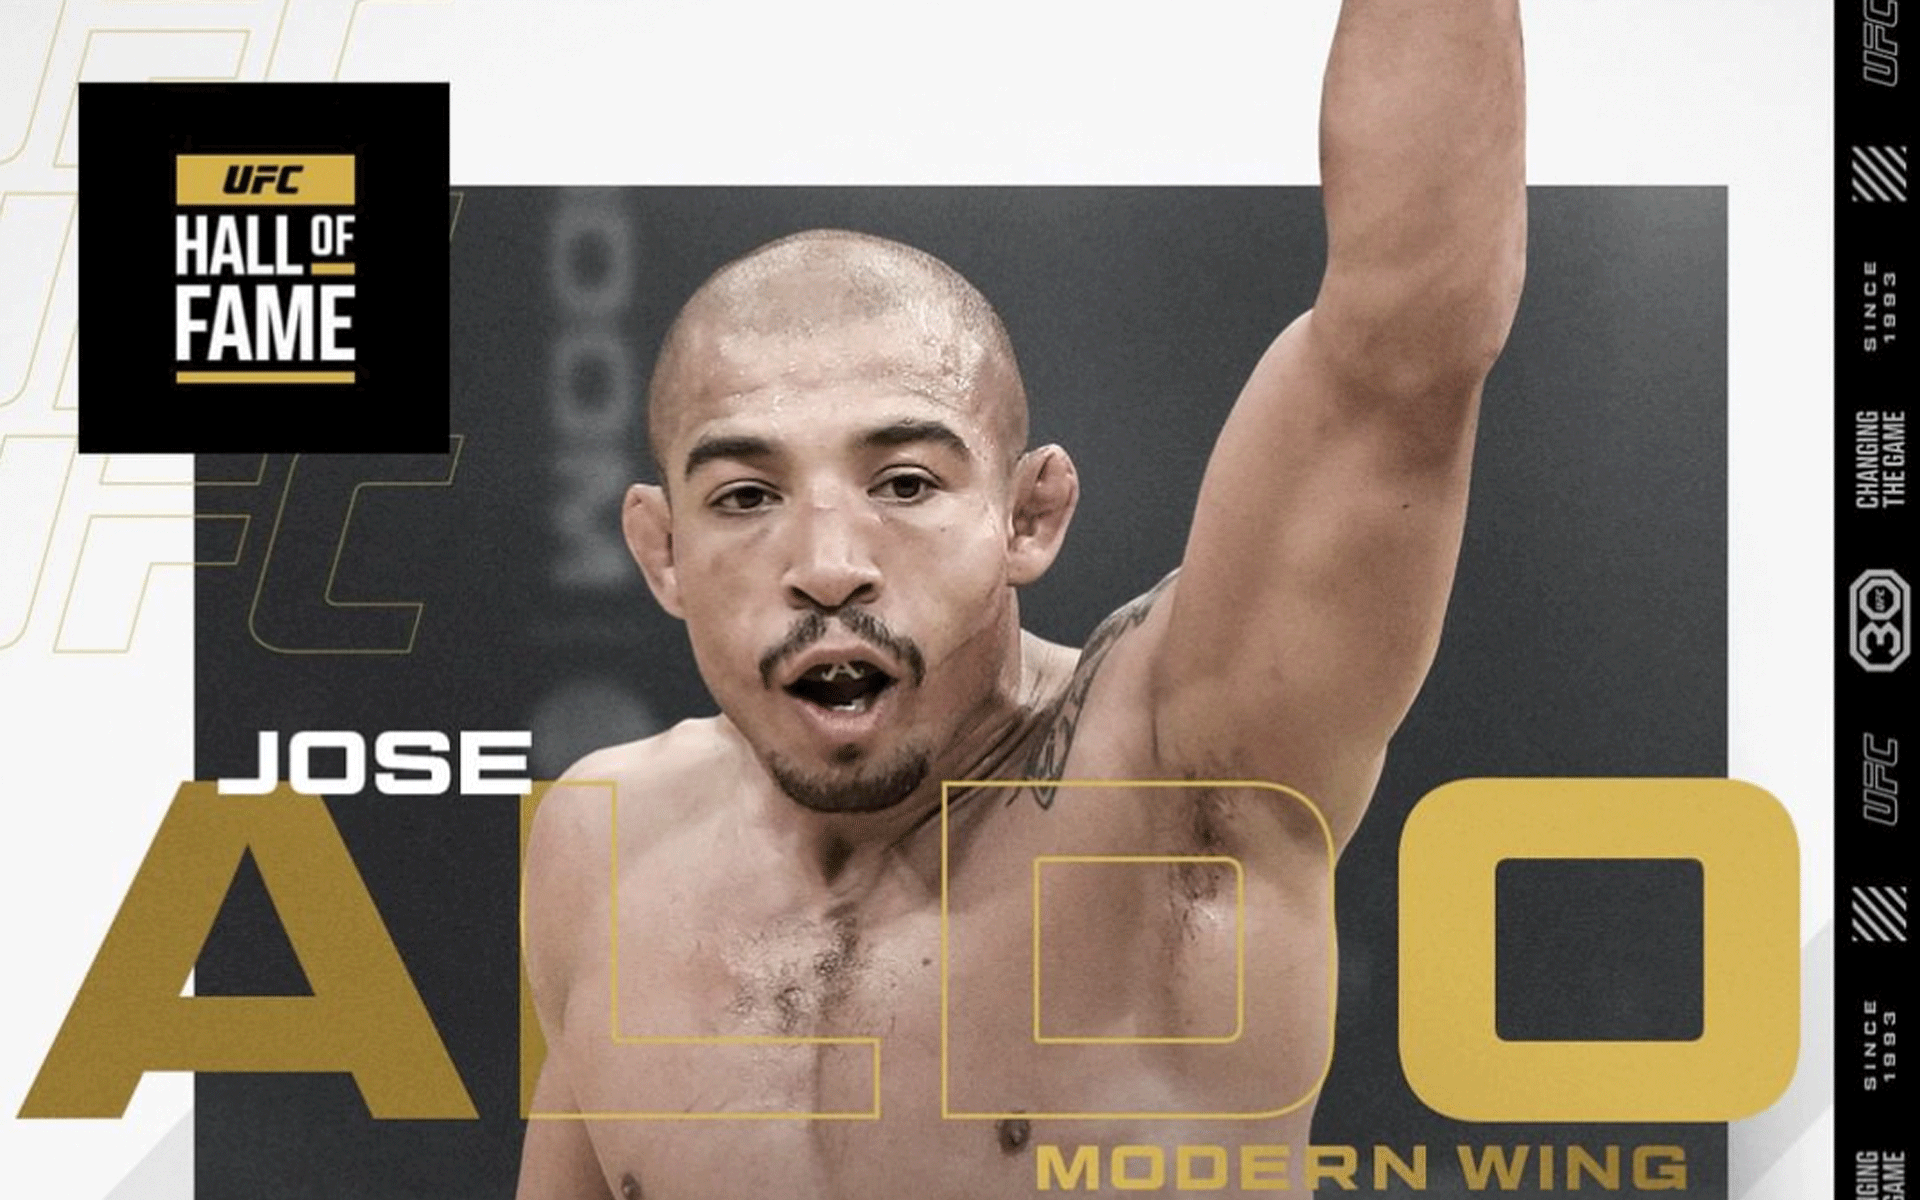 UFC-ster McGregor reageert op aartsrivaal Aldo's opname in Hall of Fame